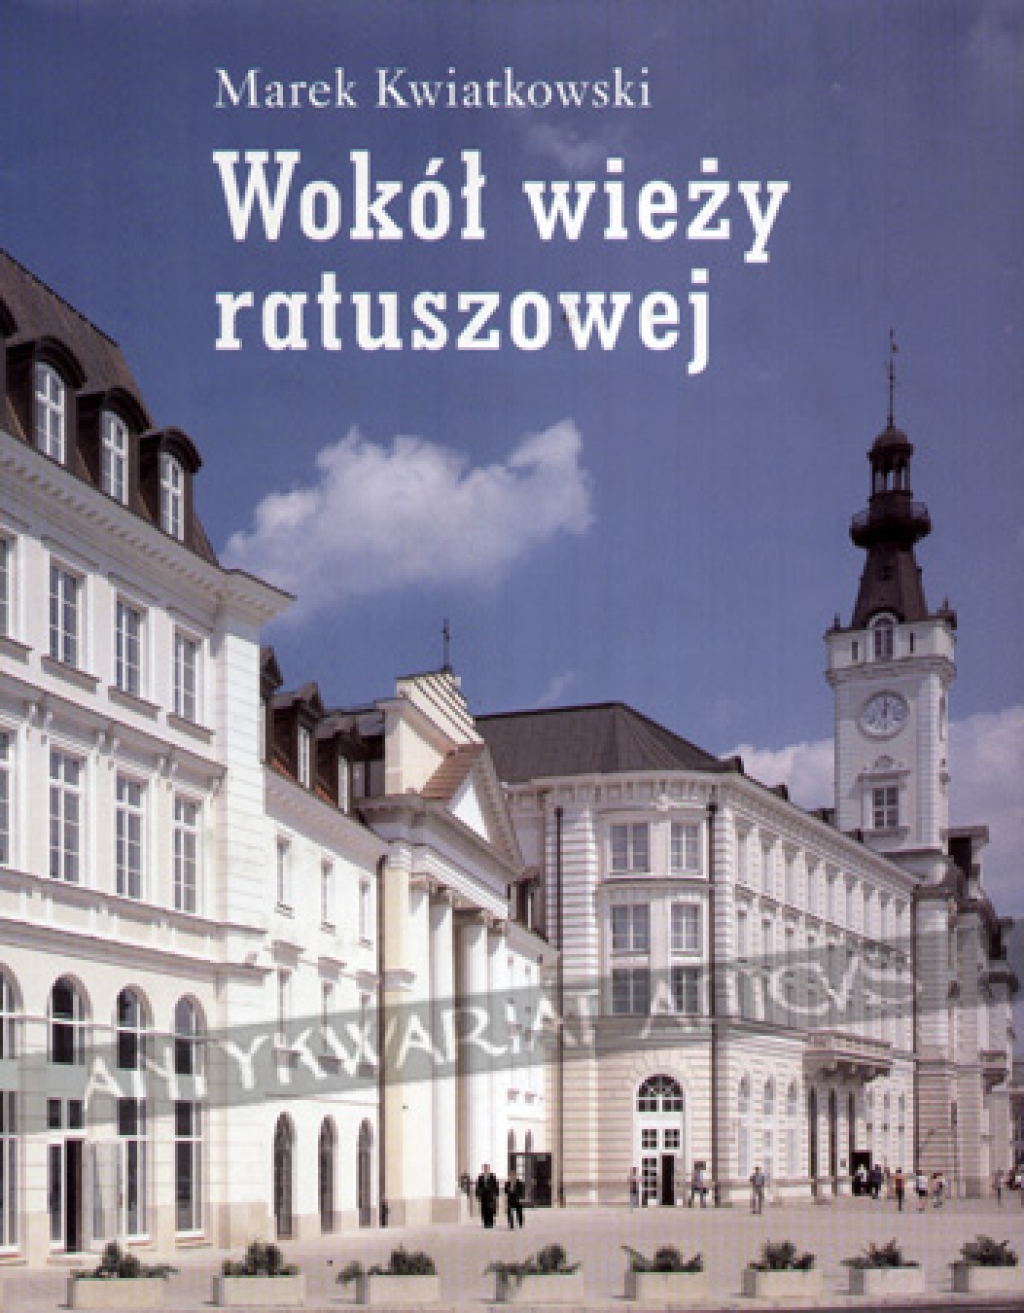 Wokół wieży ratuszowej [Warszawa]